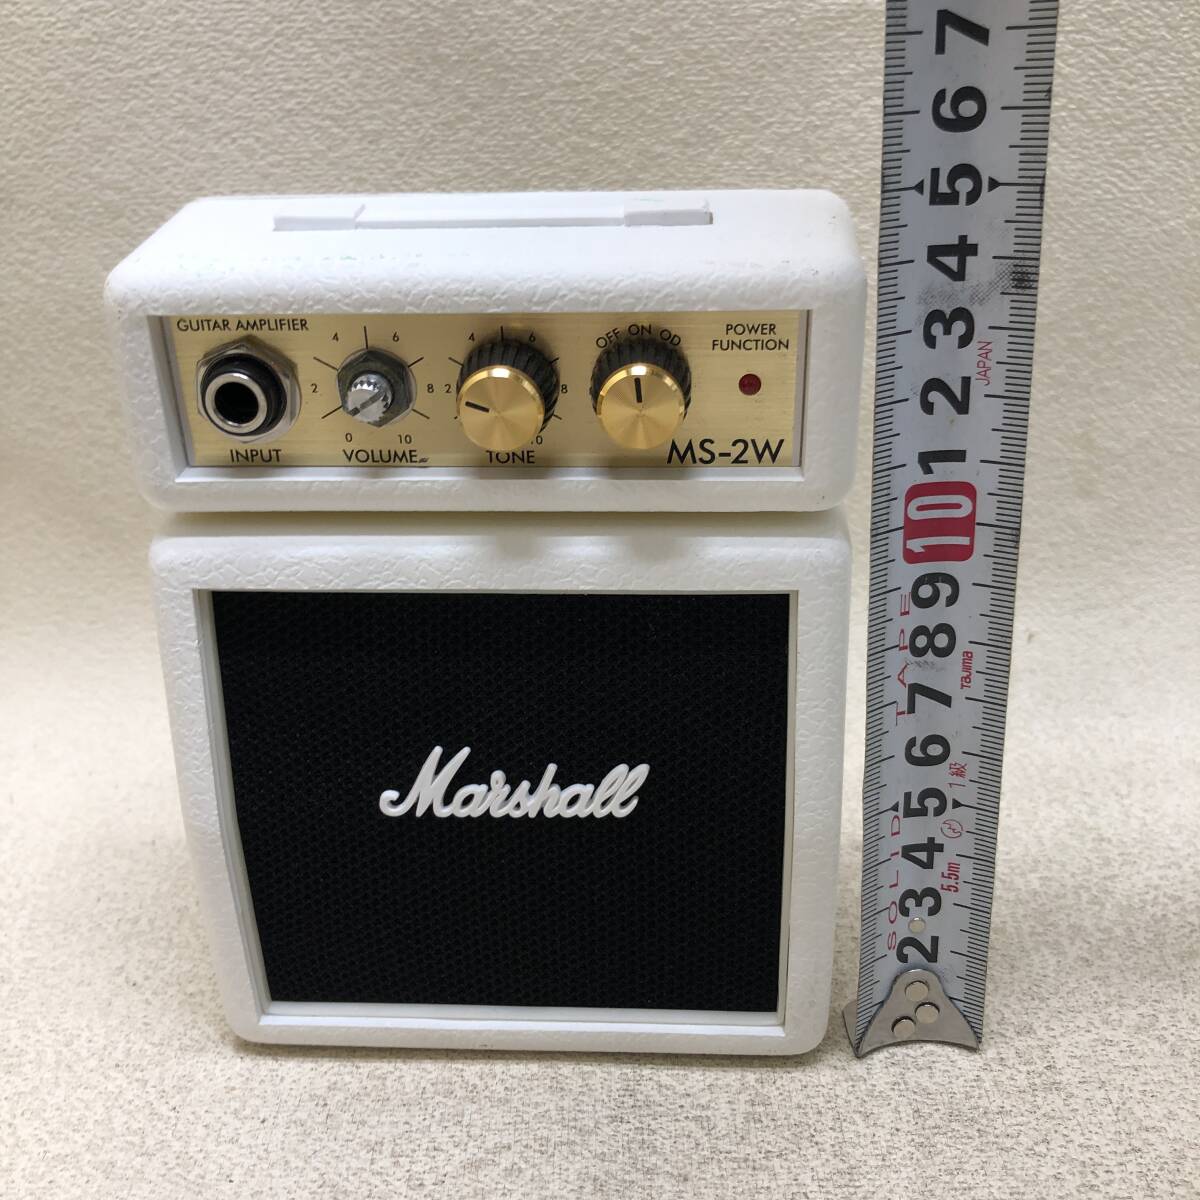 *Marshall Marshall MS-2W Mini усилитель гитарный усилитель ограничение цвет белый звуковая аппаратура рабочее состояние подтверждено б/у товар *C02073